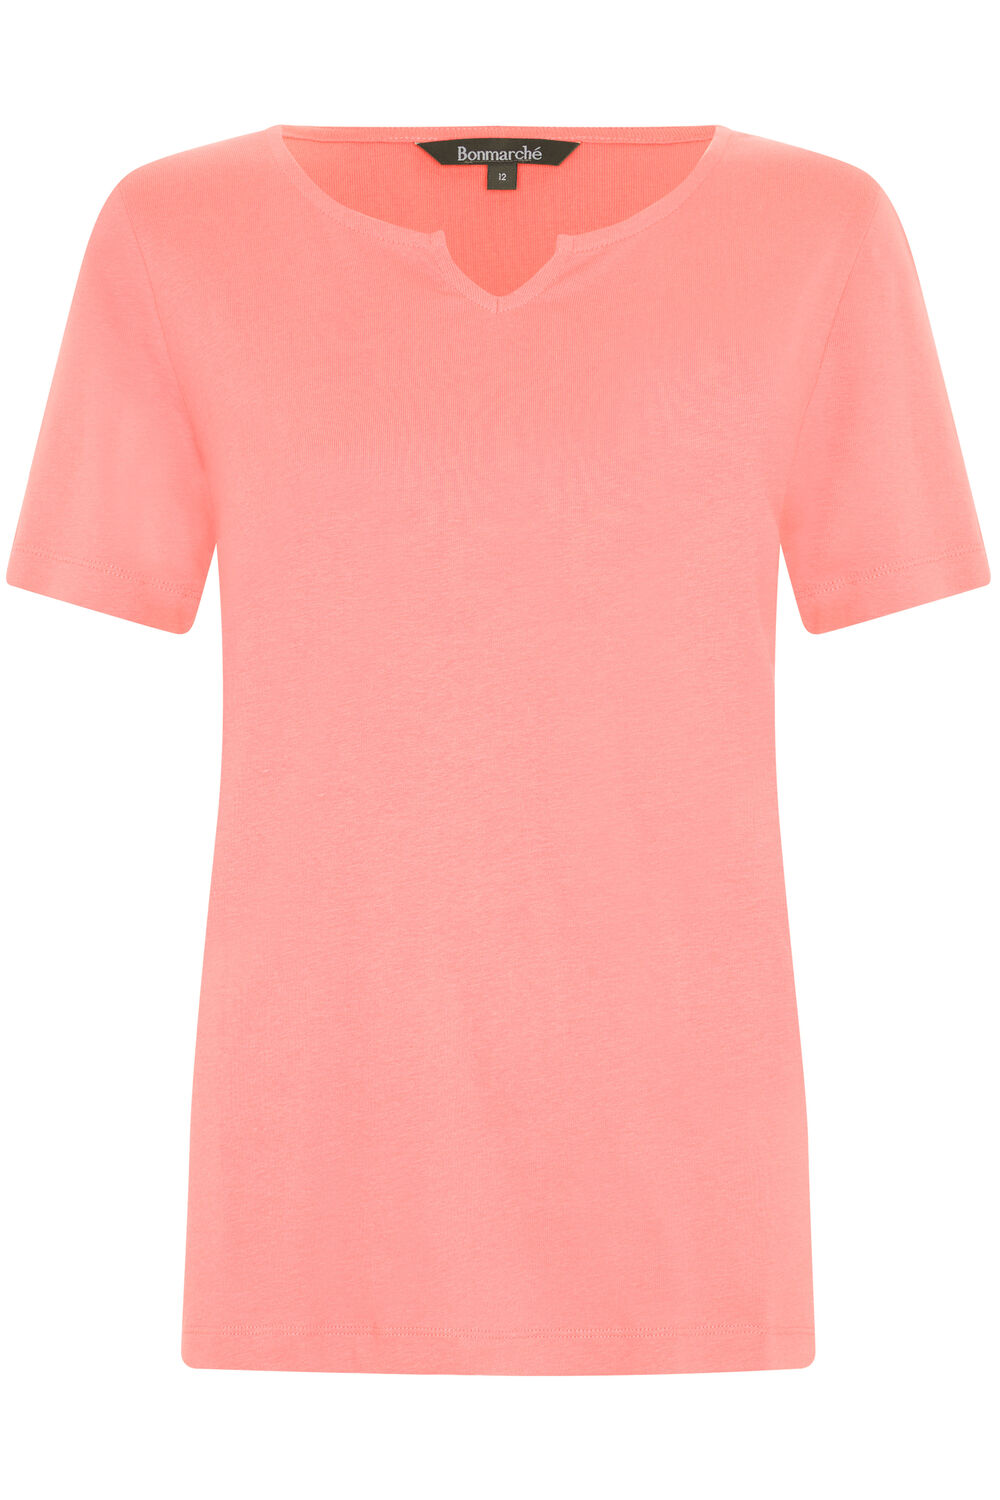 Bonmarche Coral Short Sleeve Plain Notch Neck T-Shirt, Size: 18